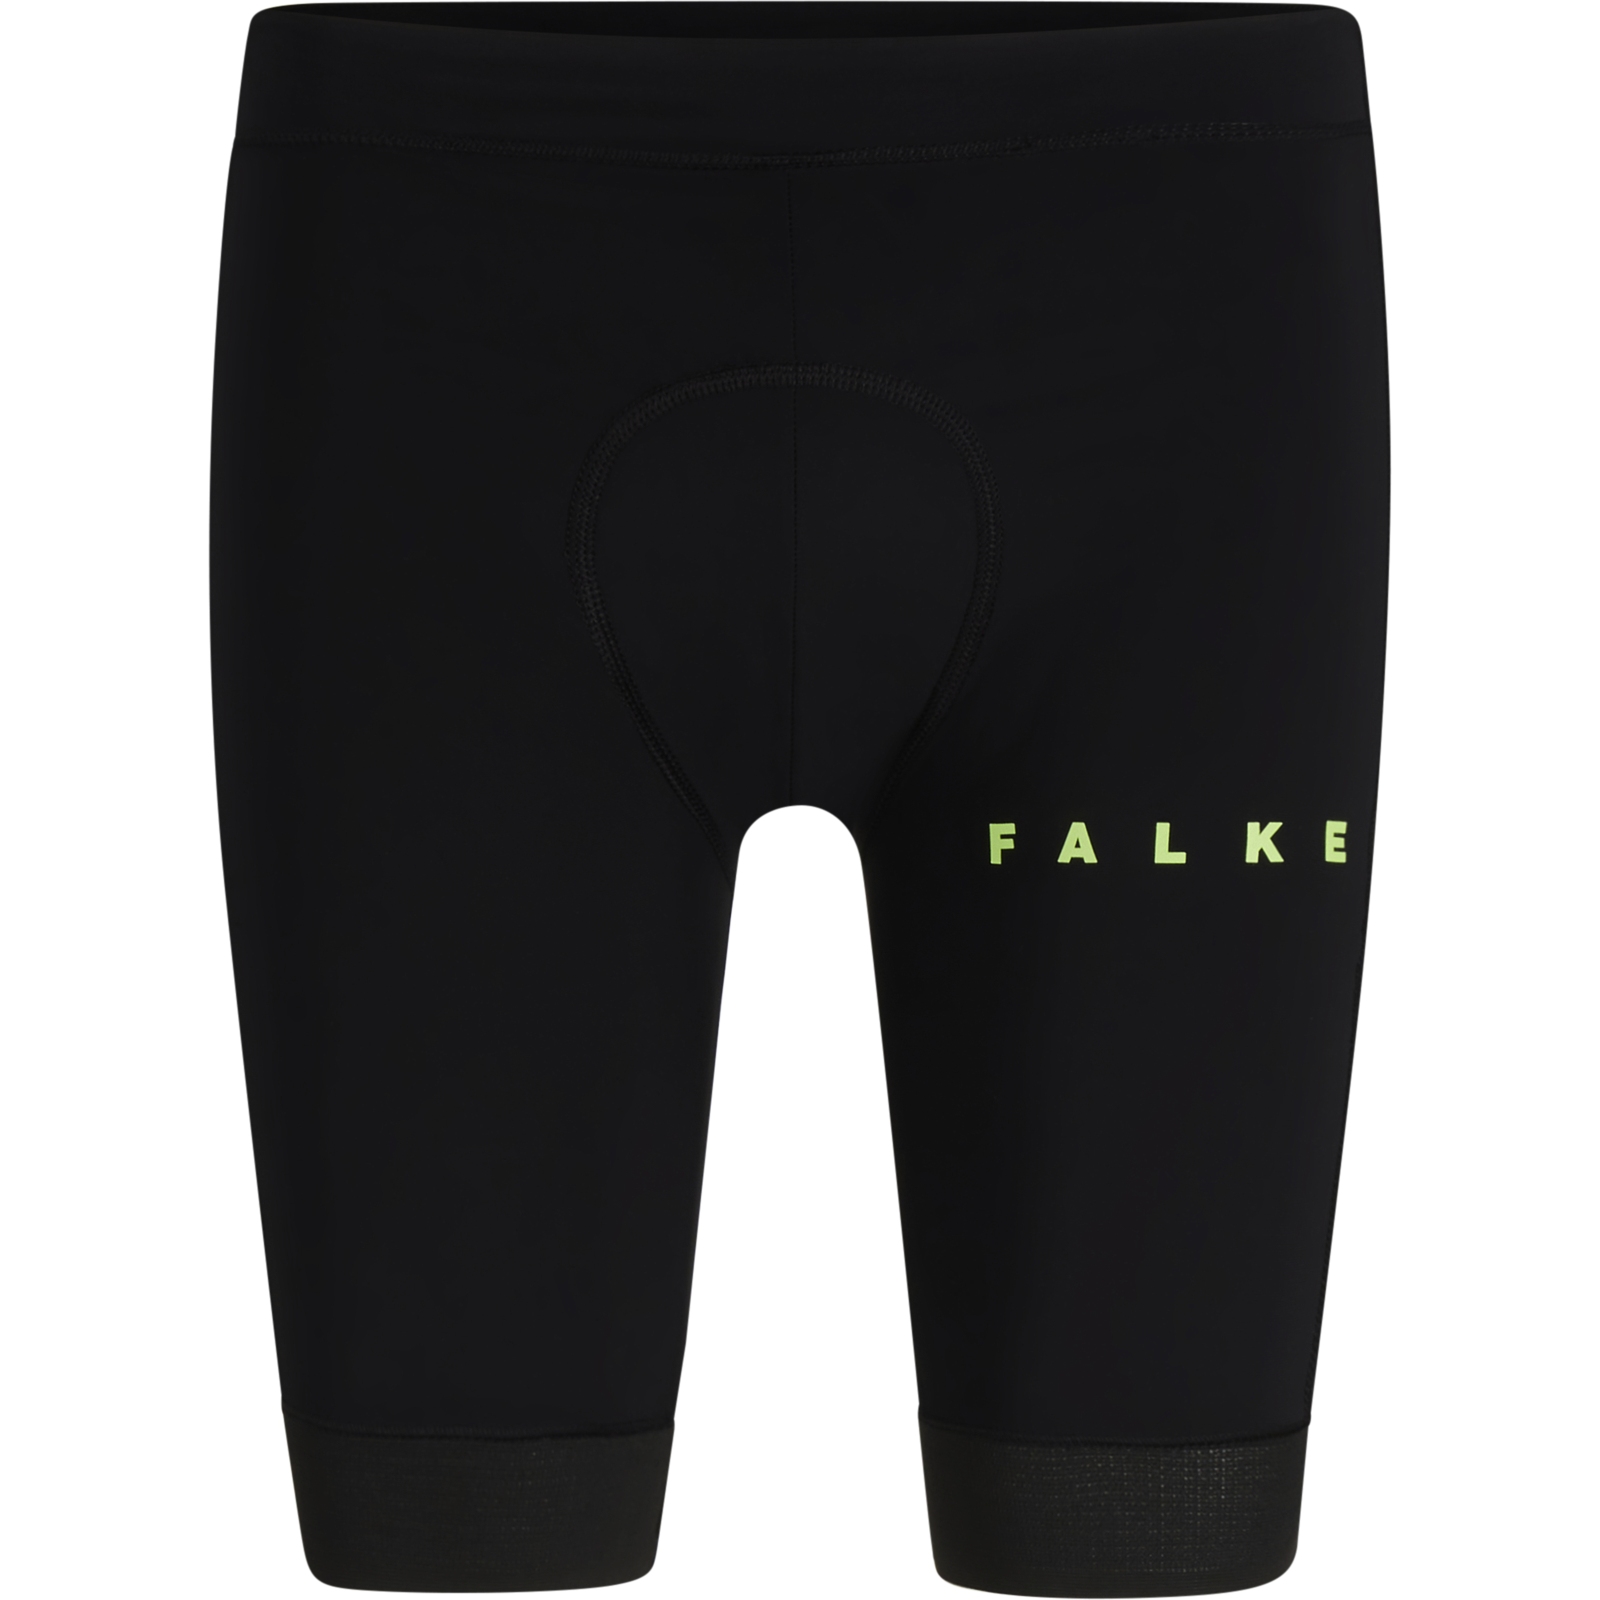 Produktbild von Falke BC Bike Shorts - 35206 - schwarz 3000